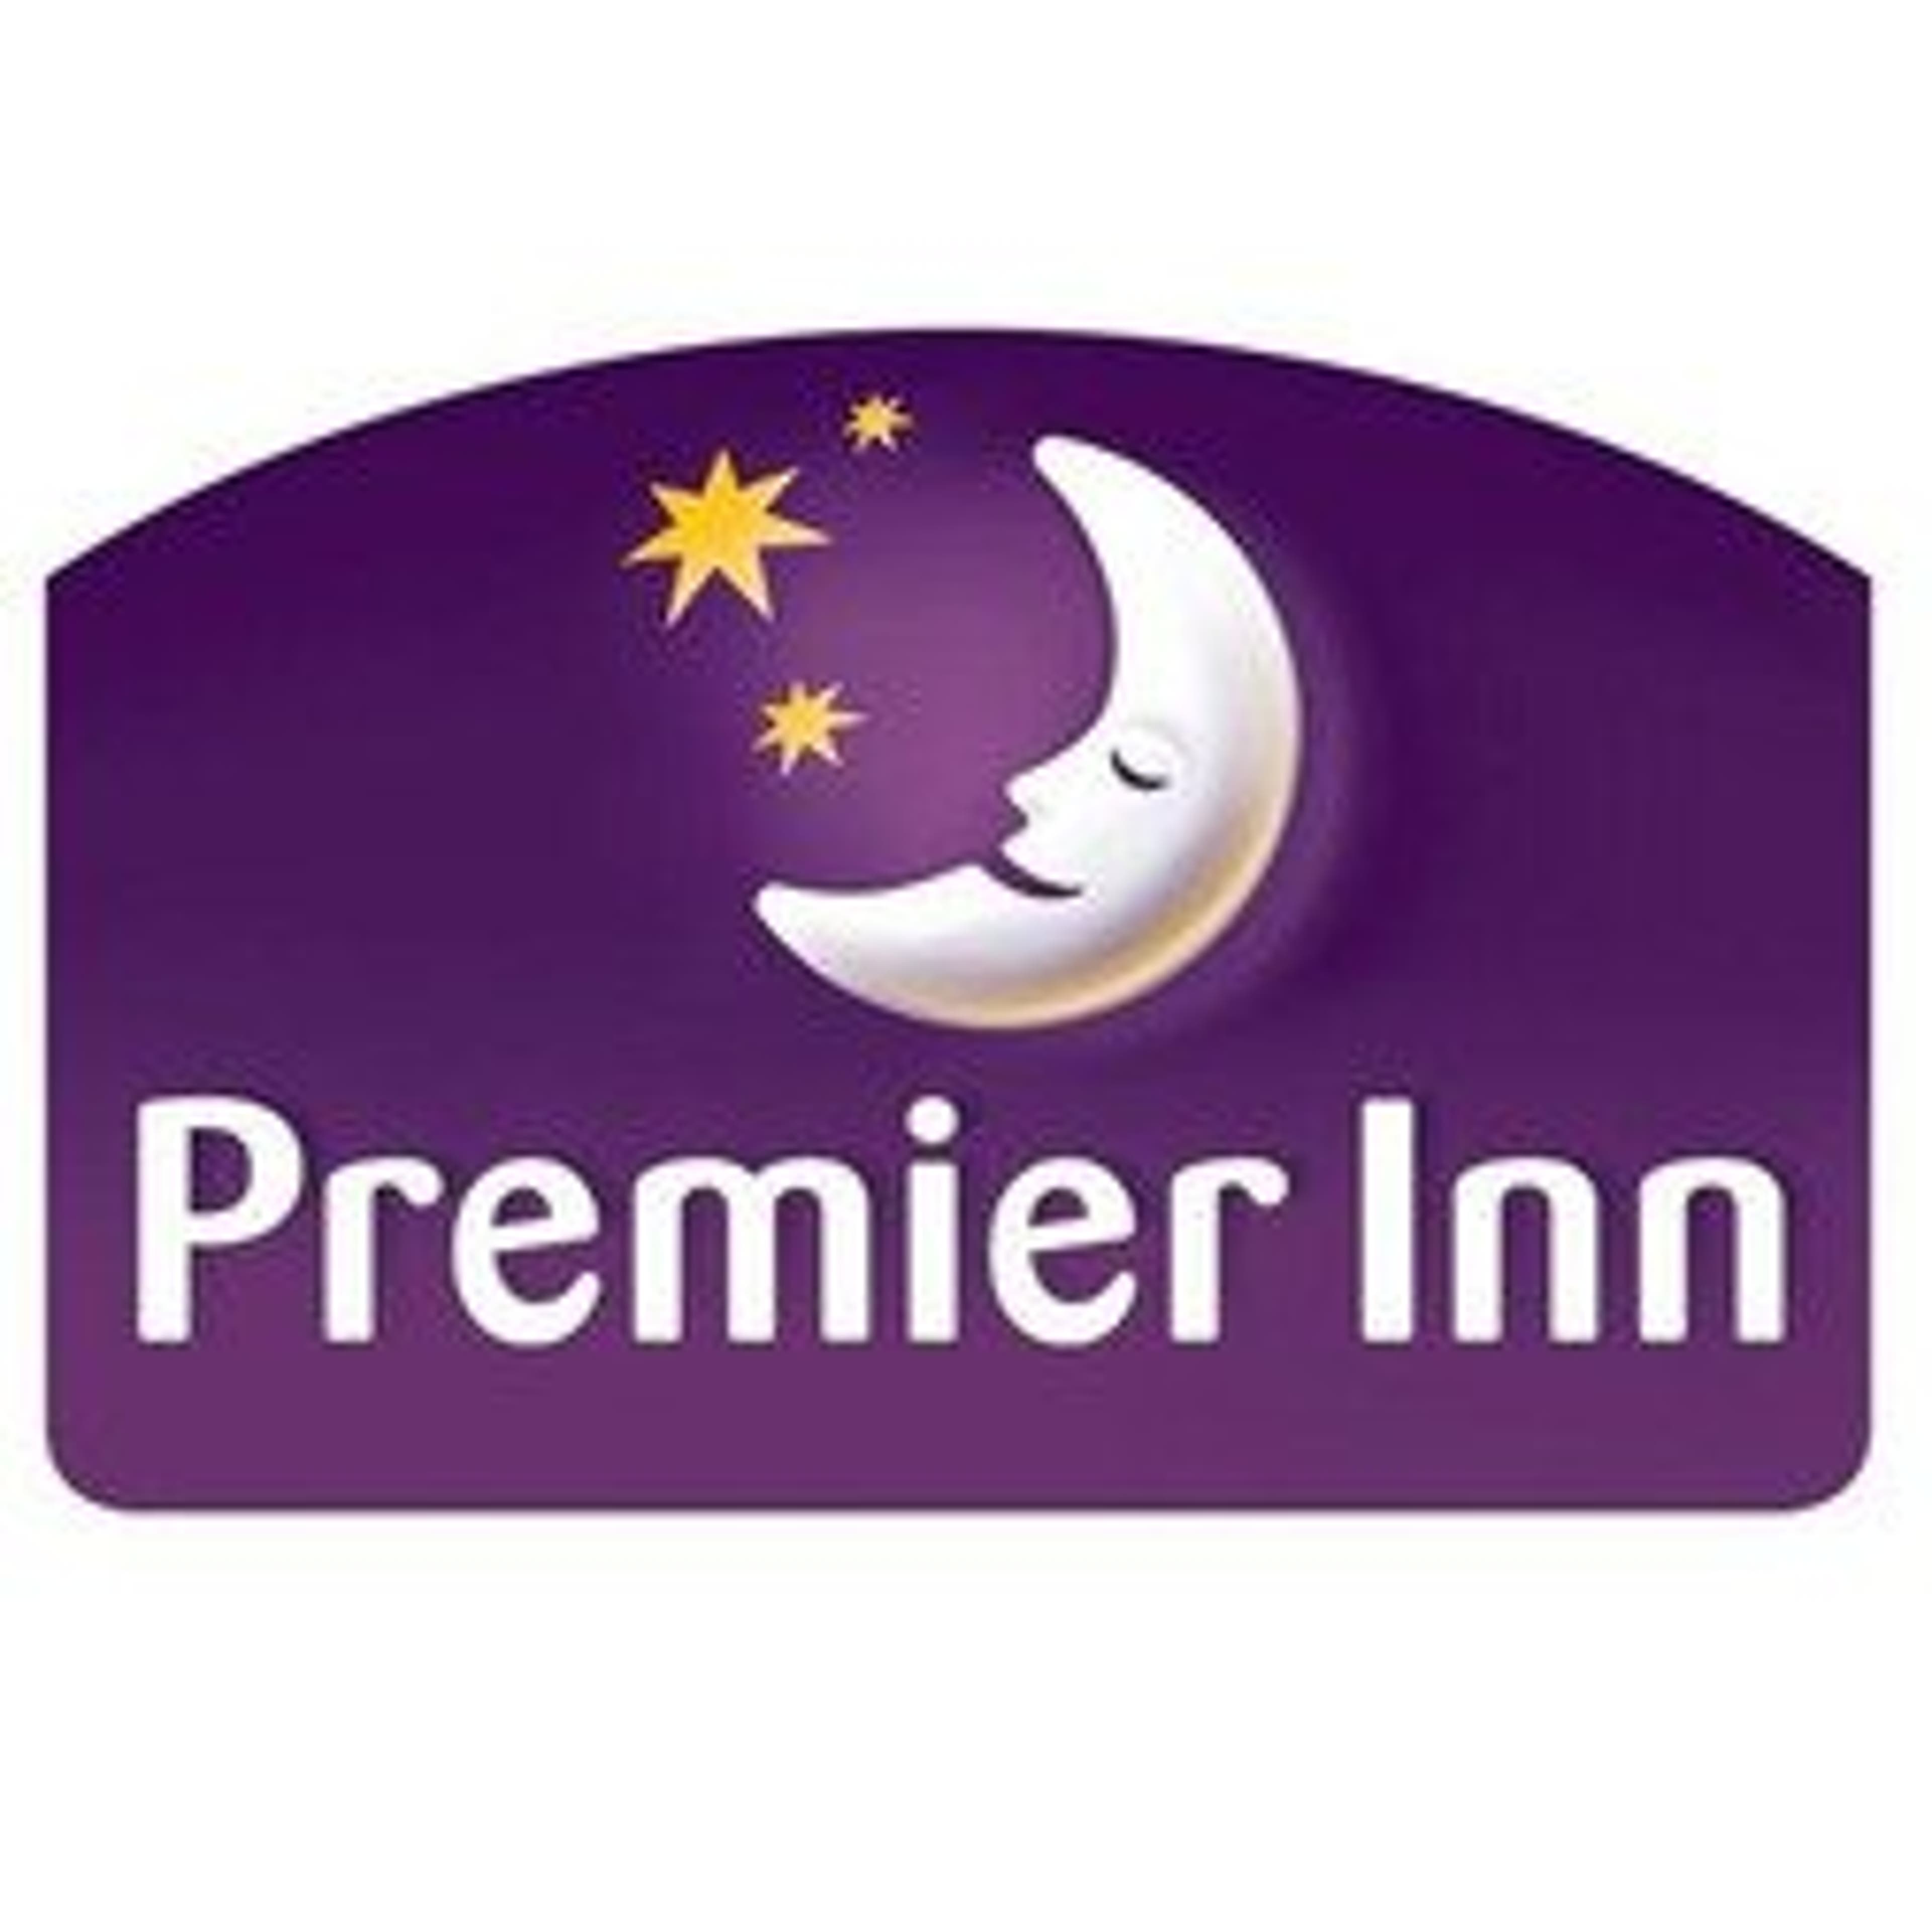  Premier Inn 